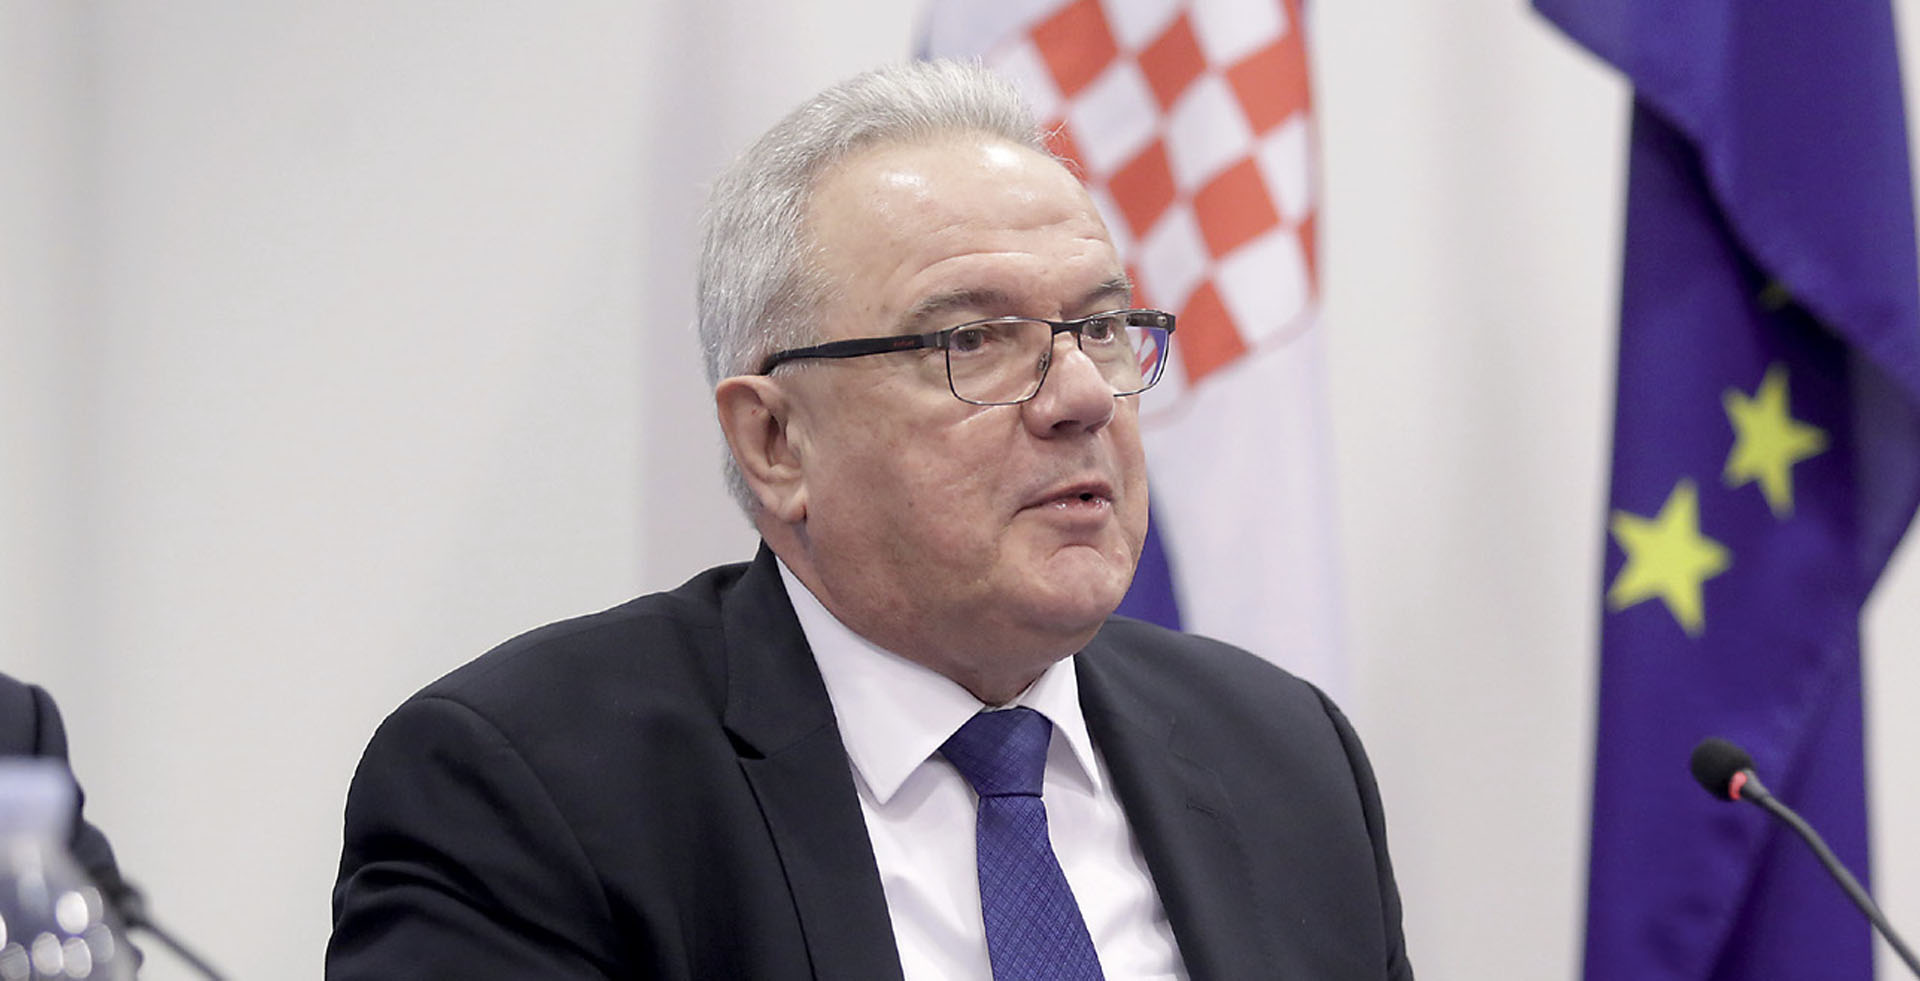 KAKO SE NEVIDLJIVI Neven Mimica promeće u ultimativnog uhljeba hrvatske politike